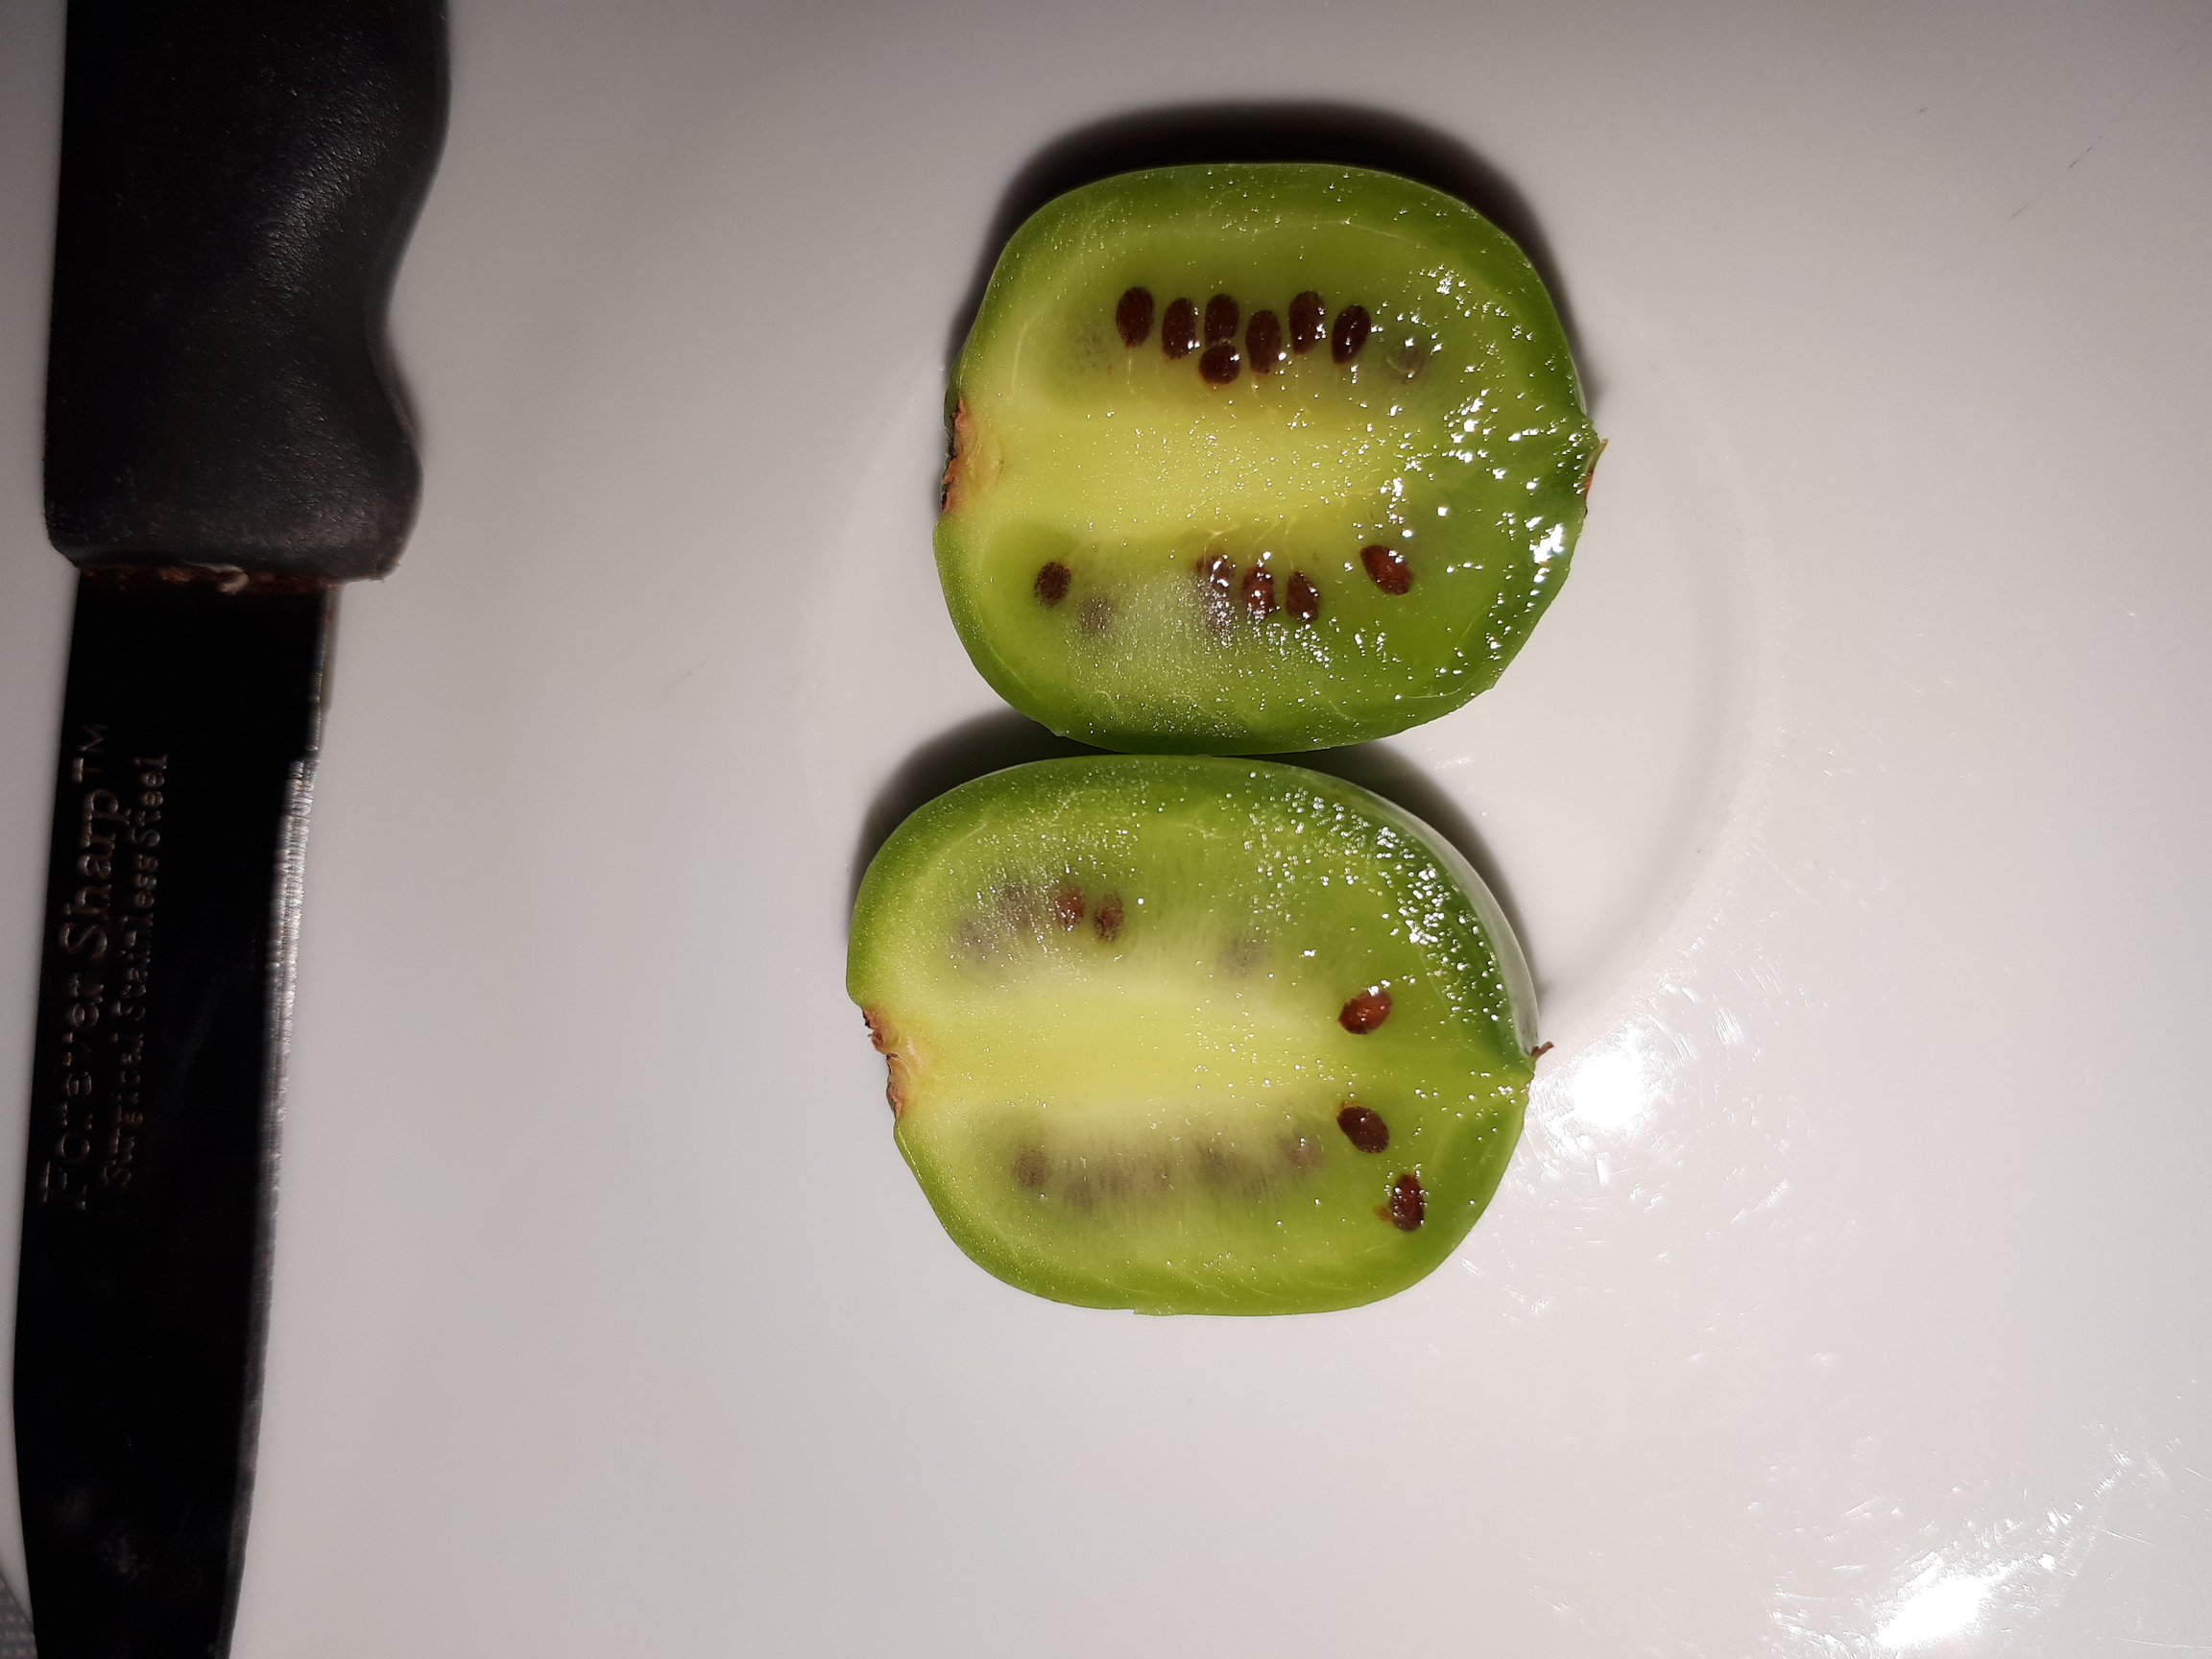 The inside is like a kiwi fruit.